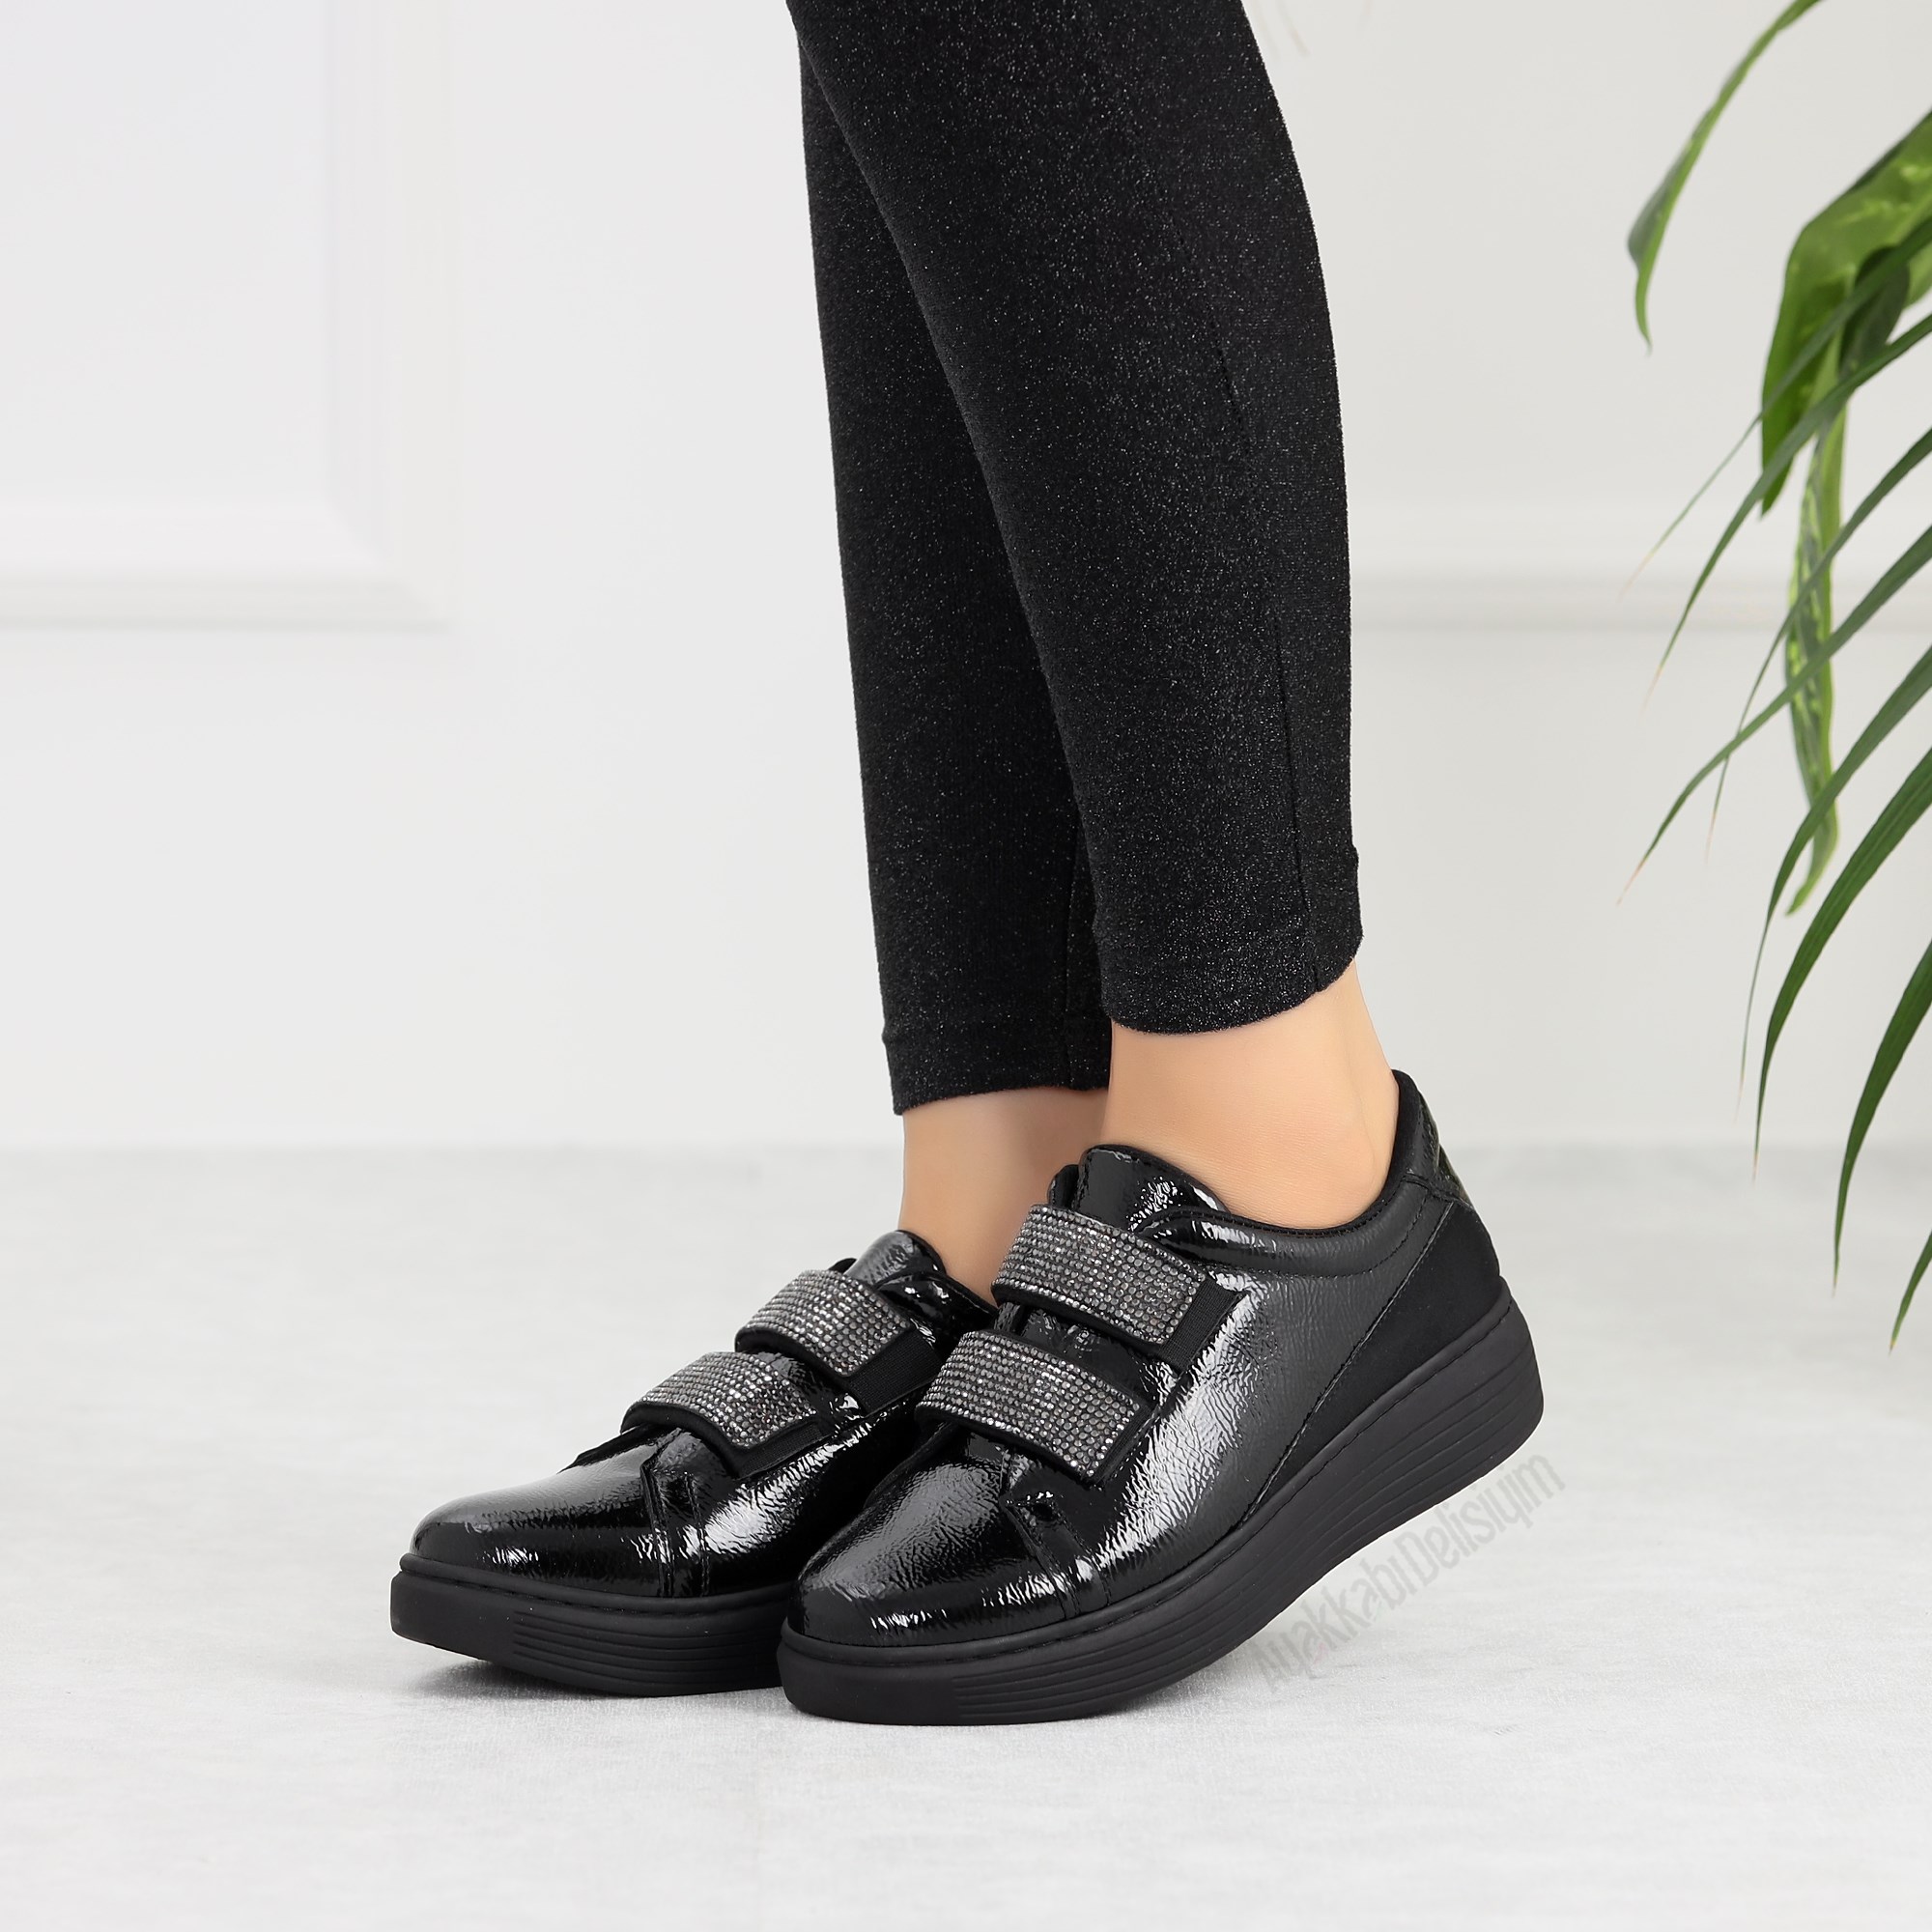 Orten Siyah Cırt Cırtlı Kadın Spor Ayakkabı